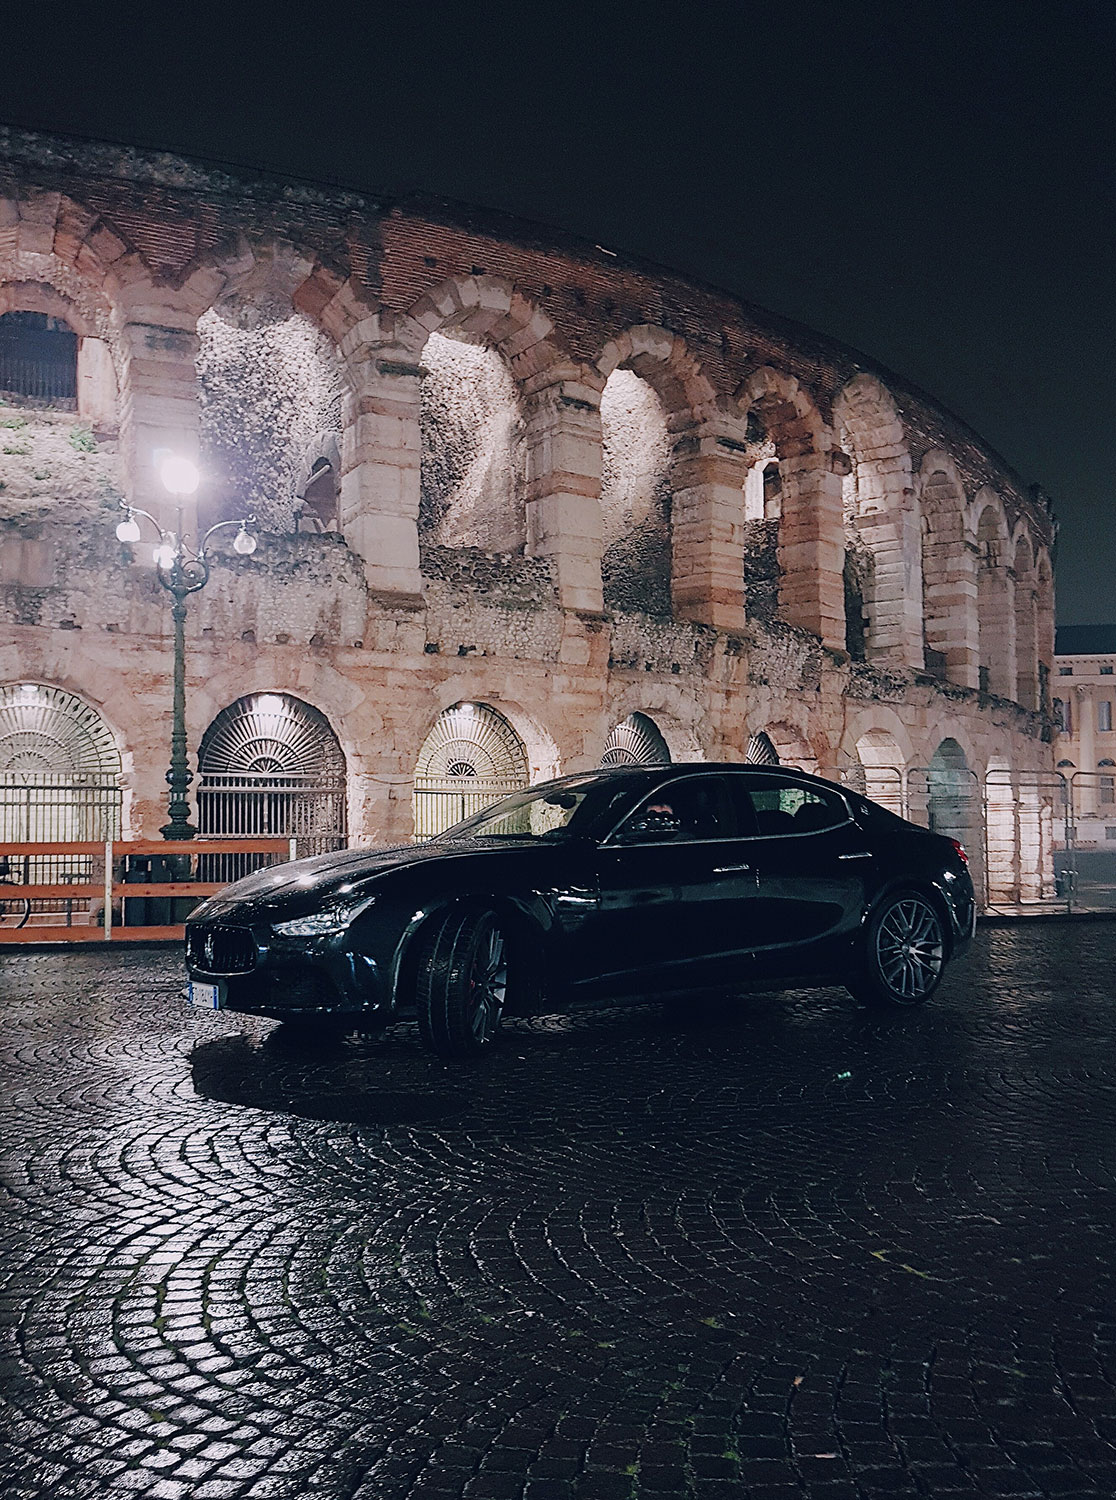 O-One-Project-Maserati-Escape-From-The-City-Veronai.jpg